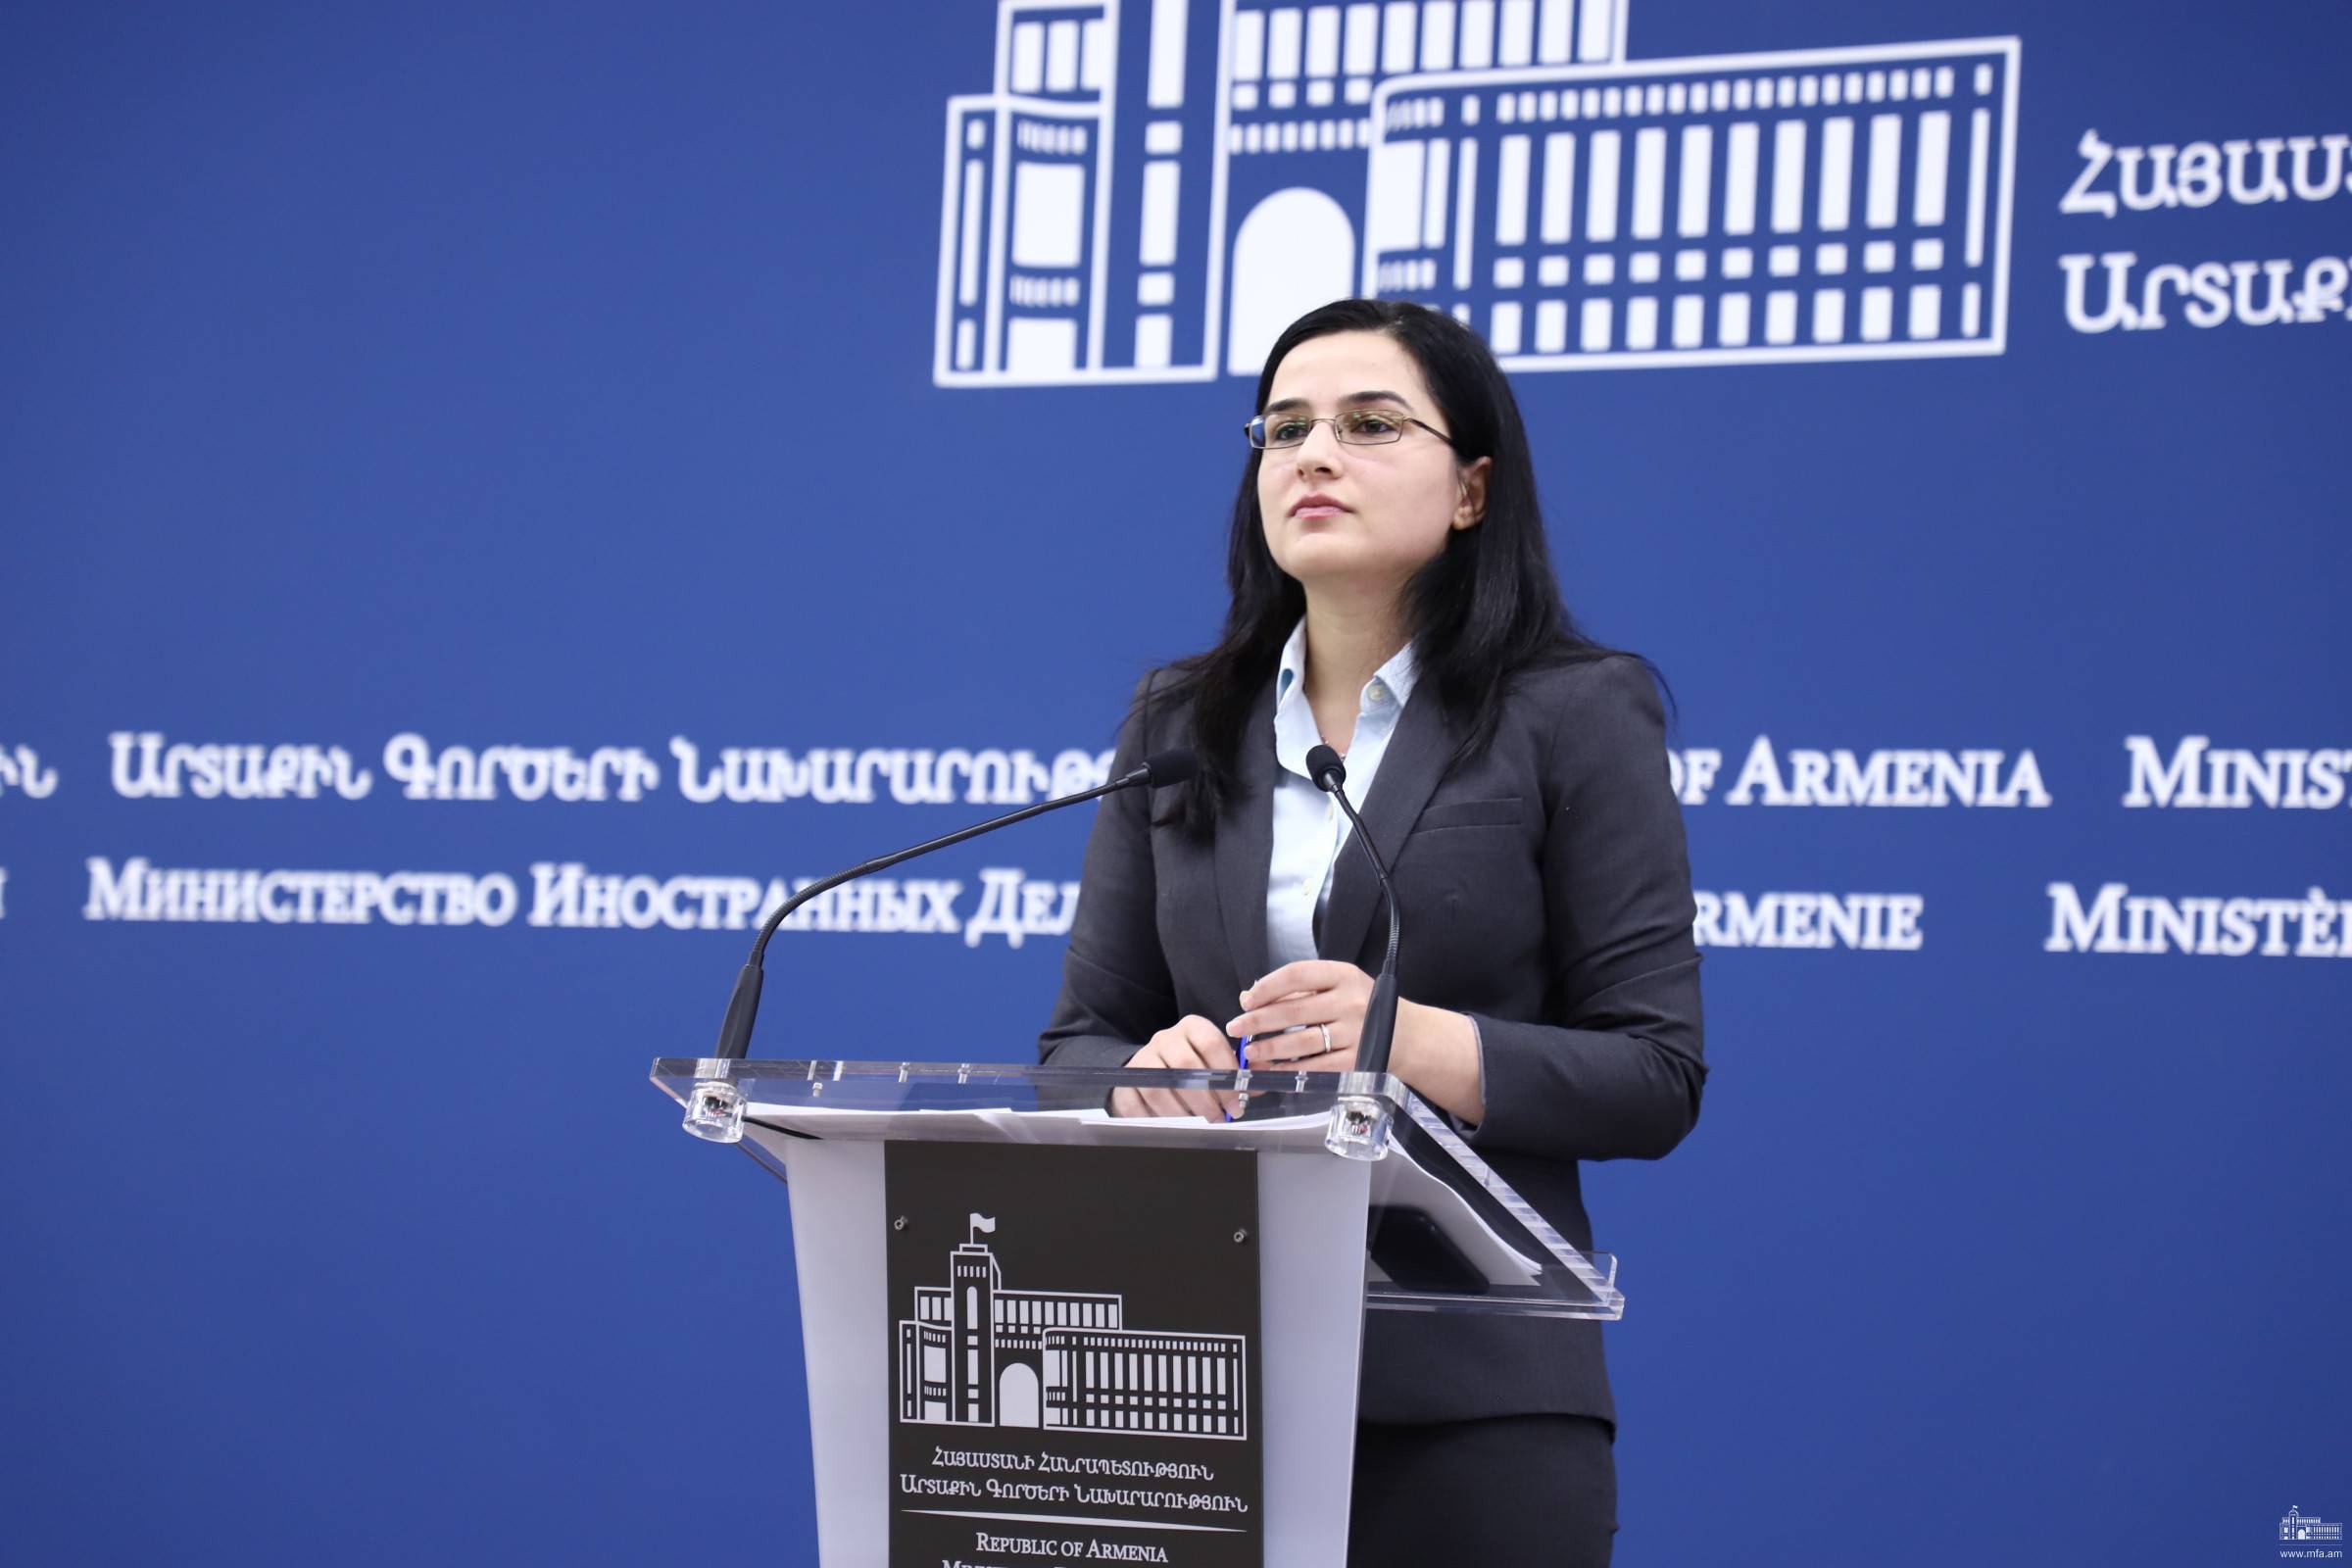 Комментарий Пресс-секретаря МИД Армении по поводу встречи Министров иностранных дел Армении и Азербайджана в Женеве